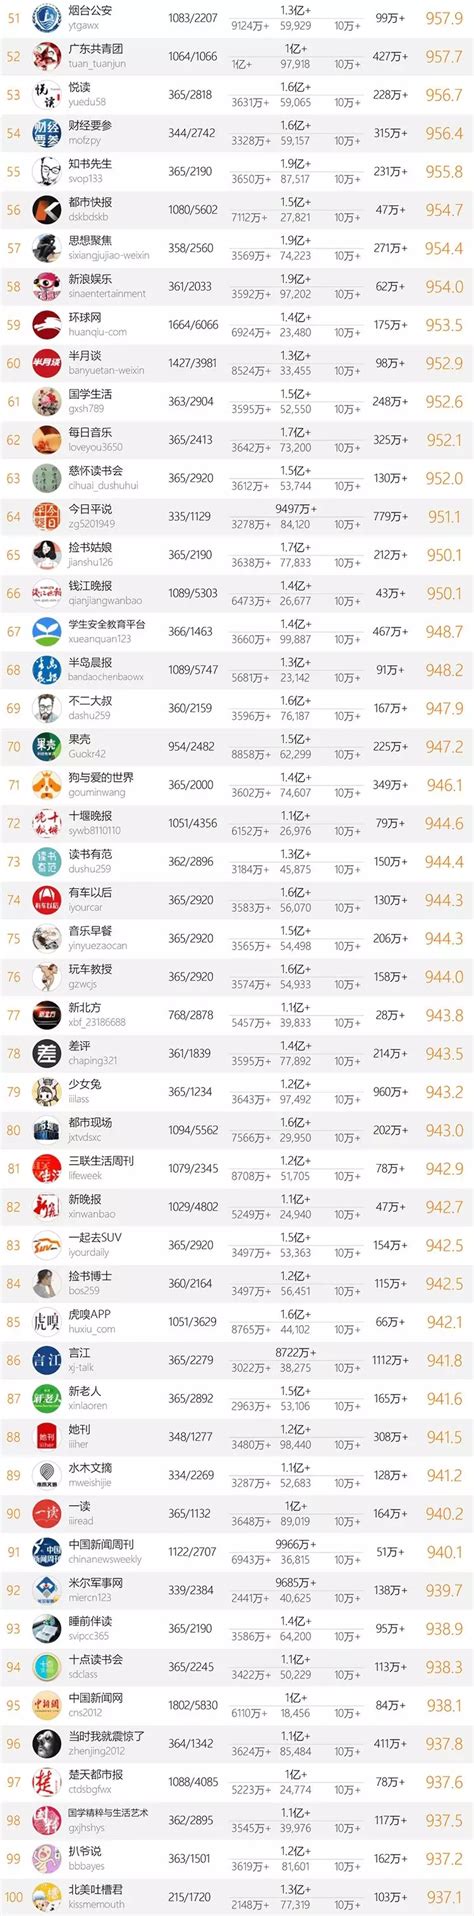 十大微信公众号排名榜-2018中国微信500强排名榜(阅读量排序)_排行 ...